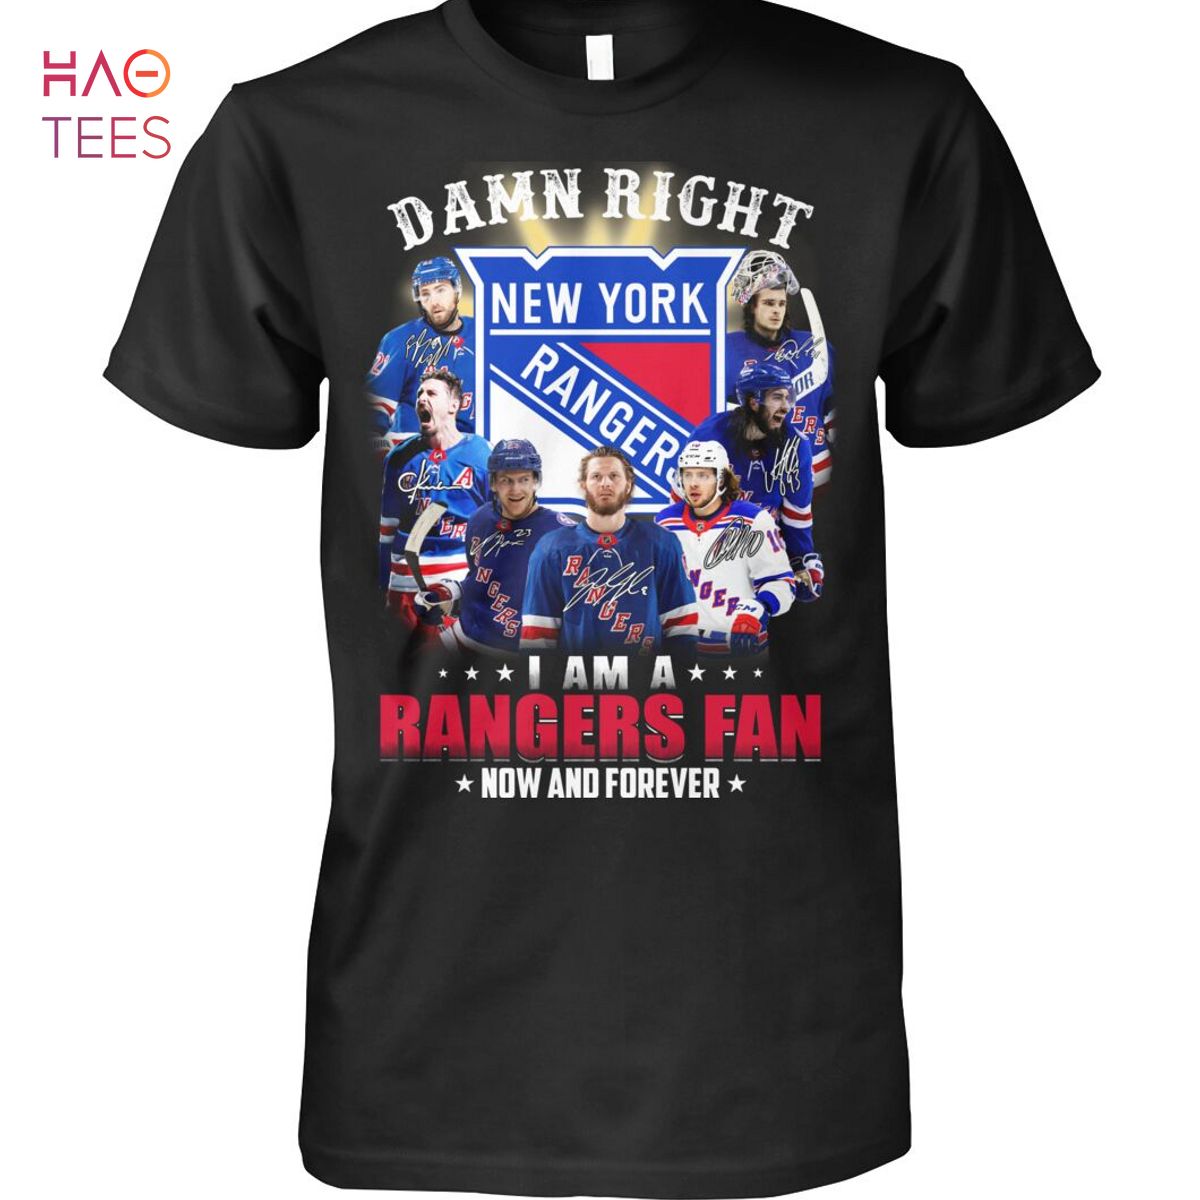 THE BEST Damn Right New York Ranger Shirt